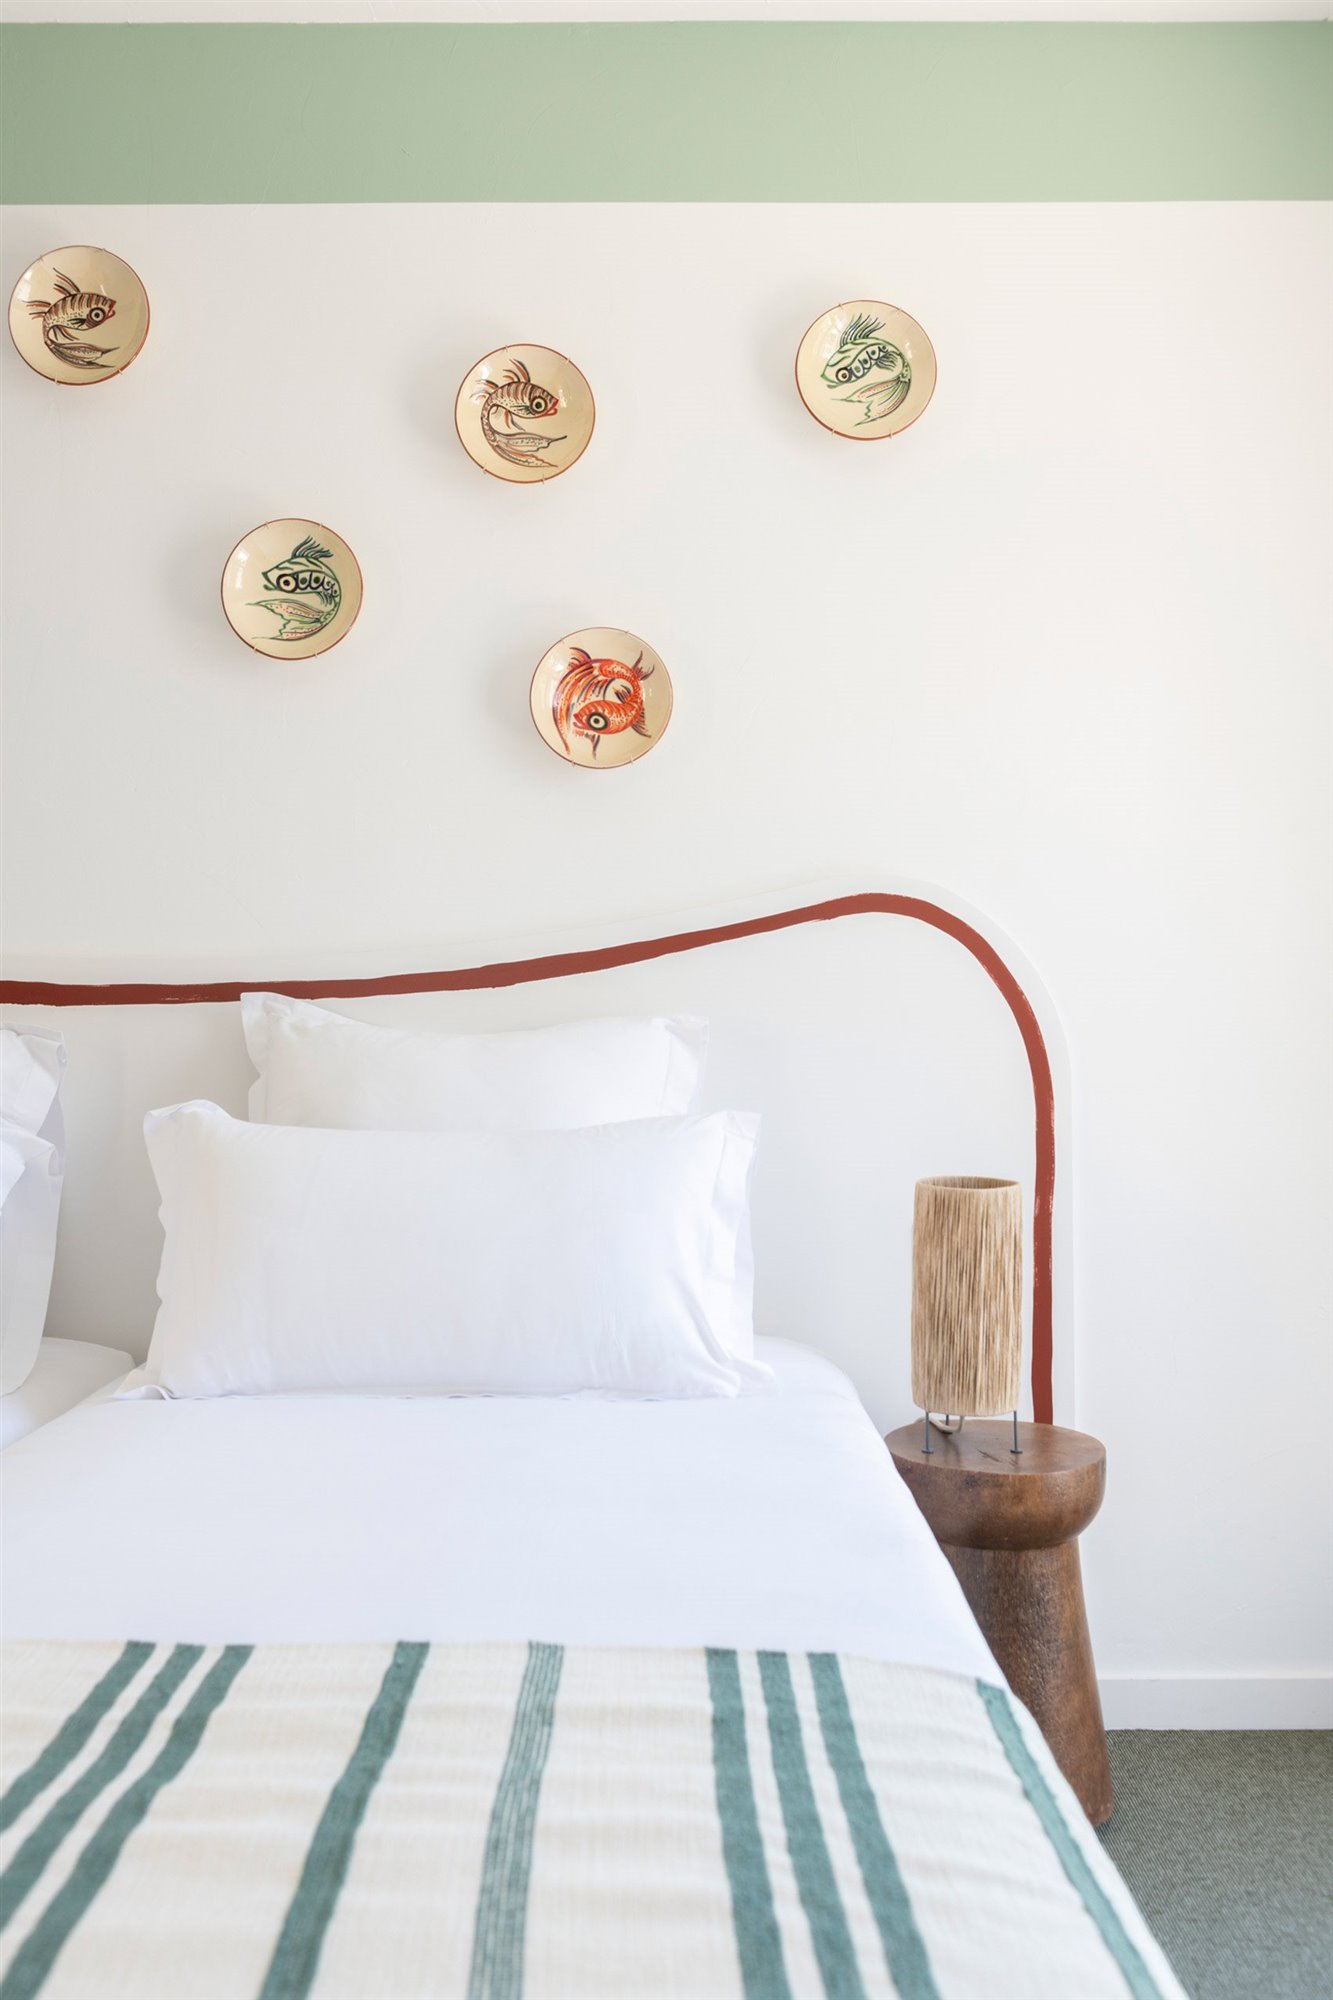 Dormitorio con platos de ceramica del hotel le sud en francia